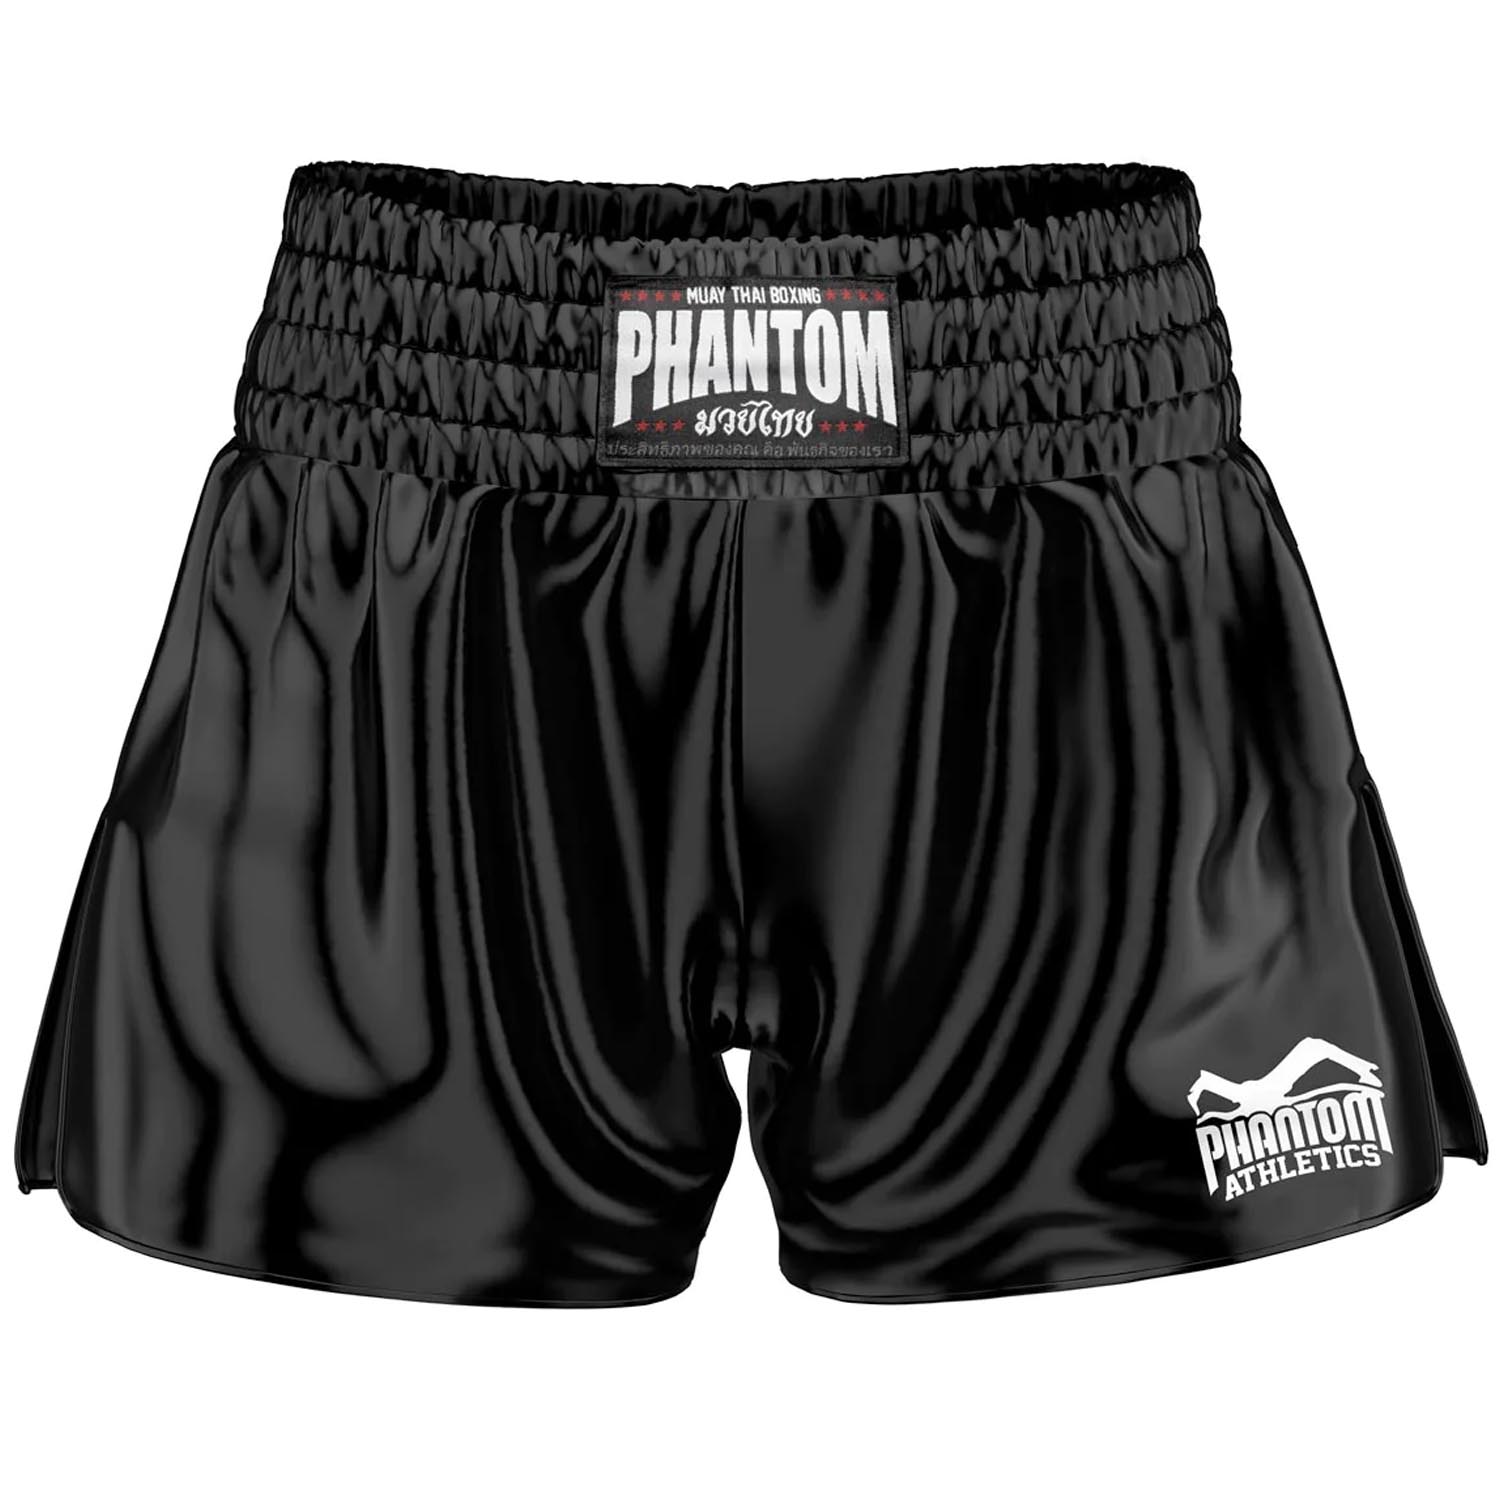 Phantom Athletics Muay Thai Shorts, Team, black